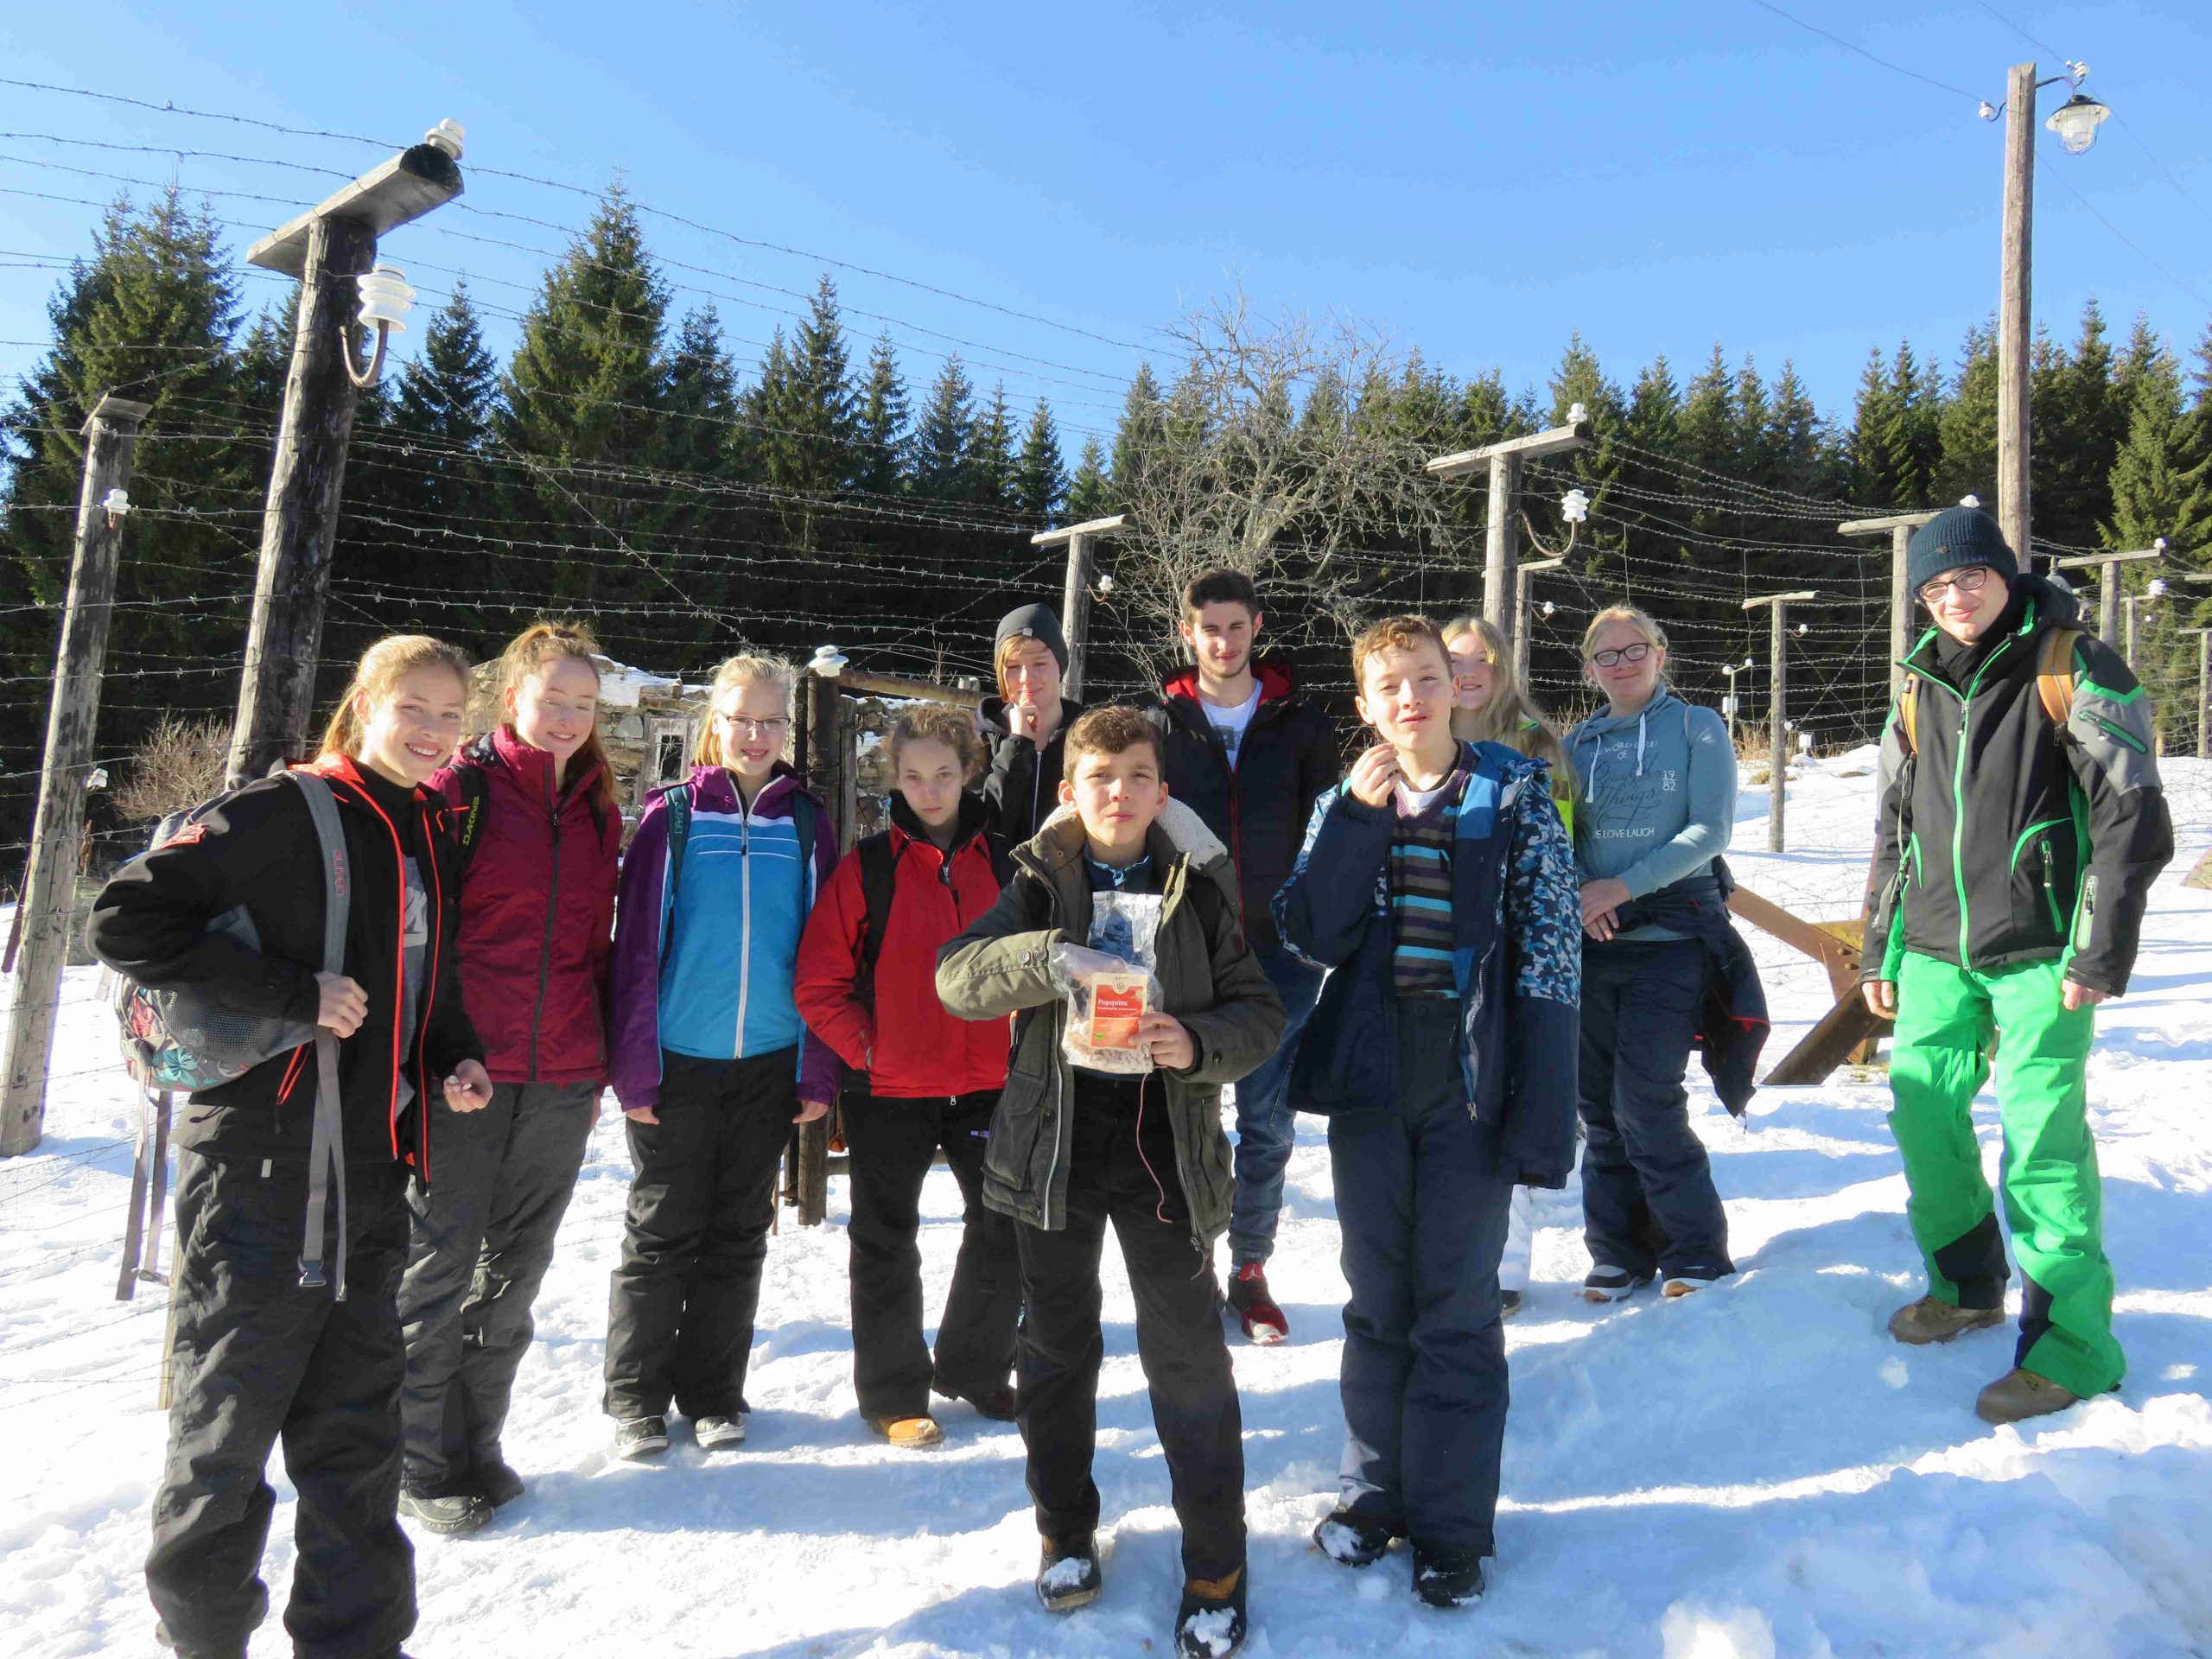 Winterfreizeit in den Bayerischen Wald – Anmeldung ab sofort möglich